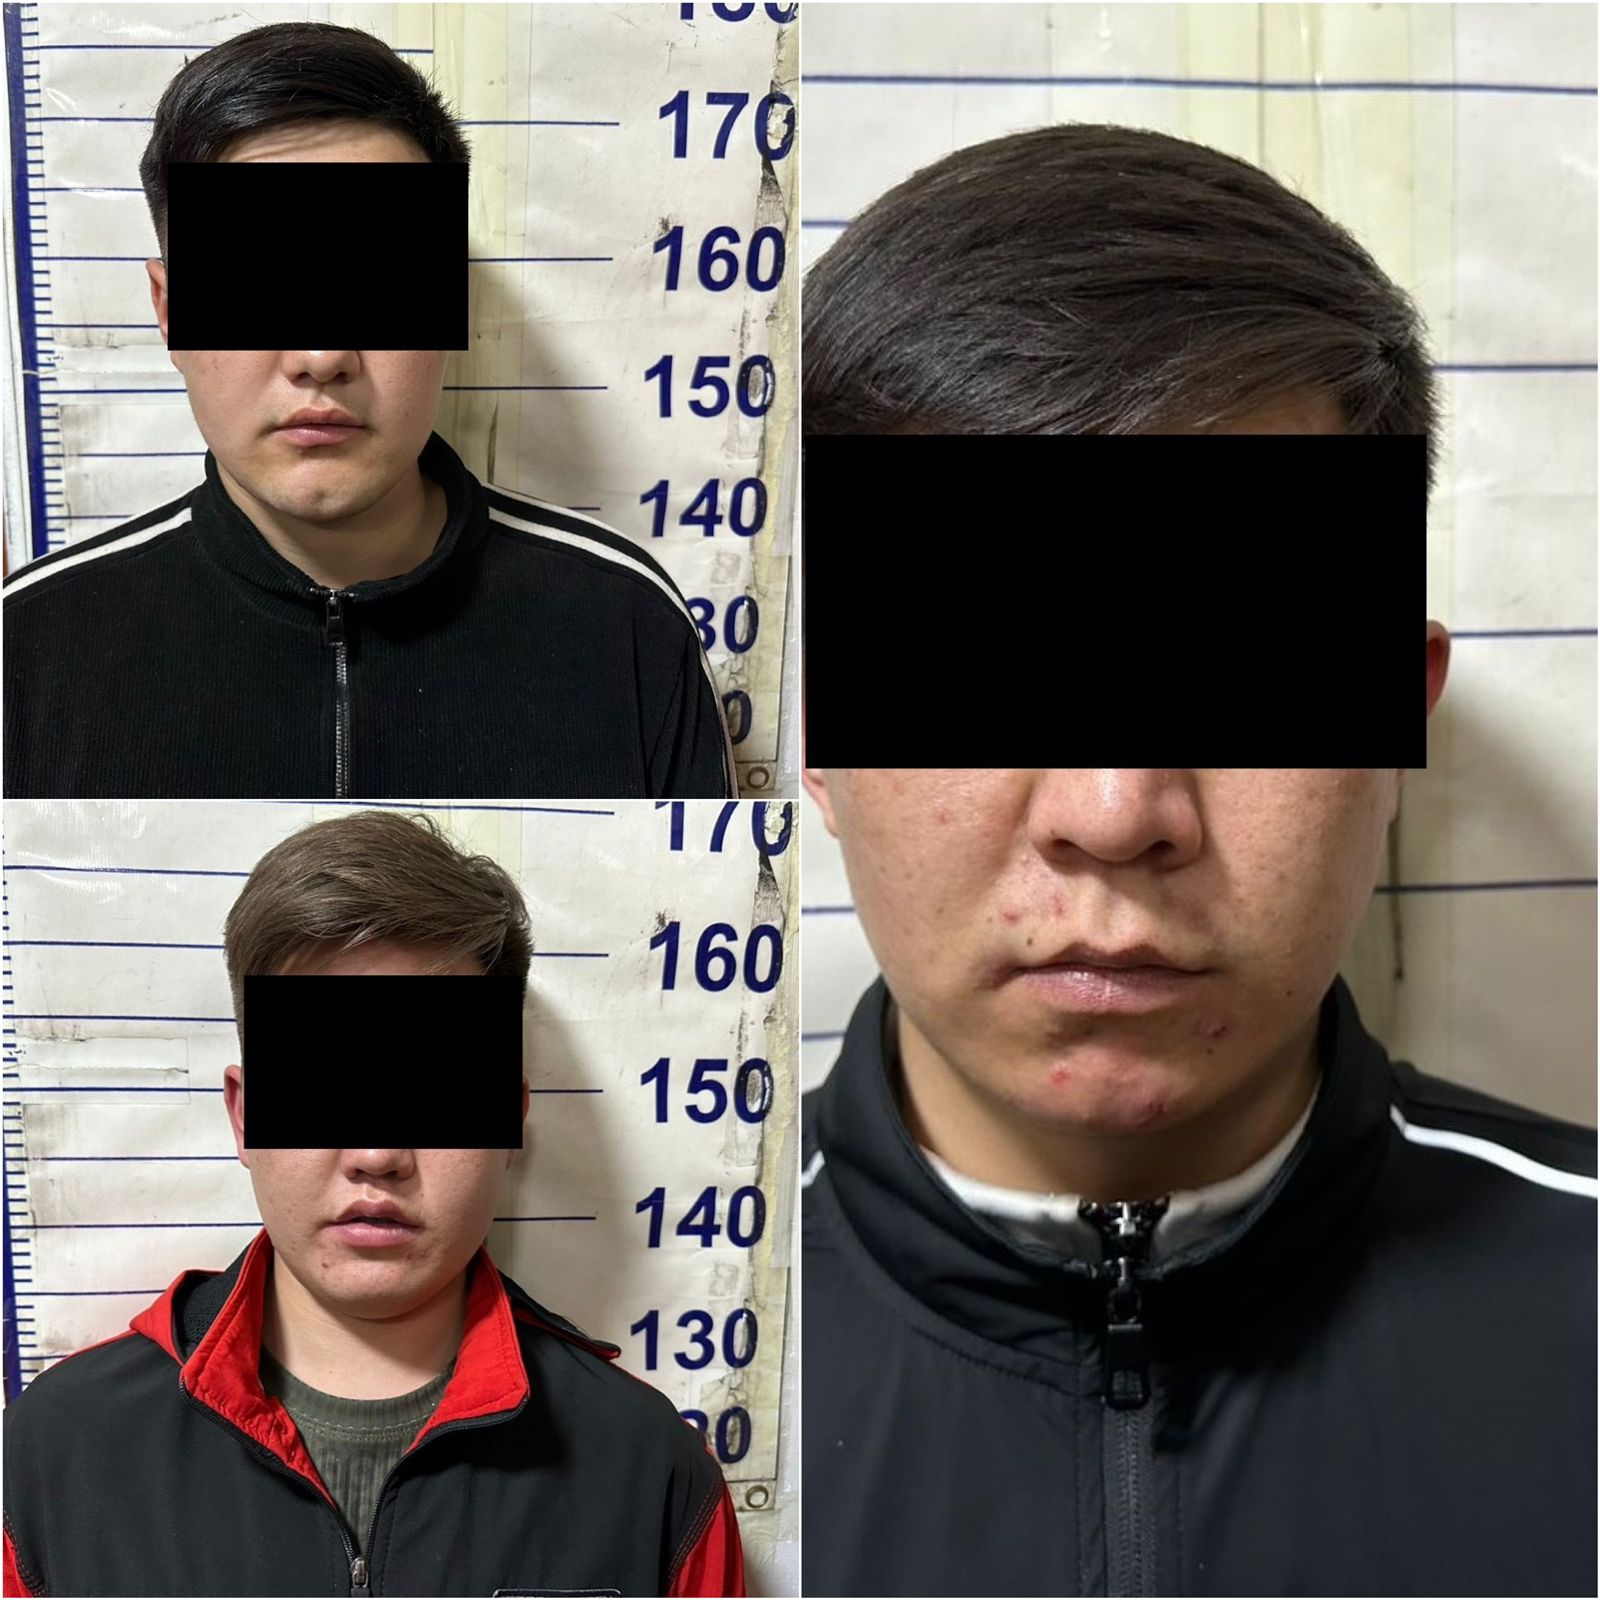 МВД: Установлены и задержаны лица подозреваемые в разбойном нападении на иностранных граждан в хостеле по улице А.Огонбаева города Бишкек